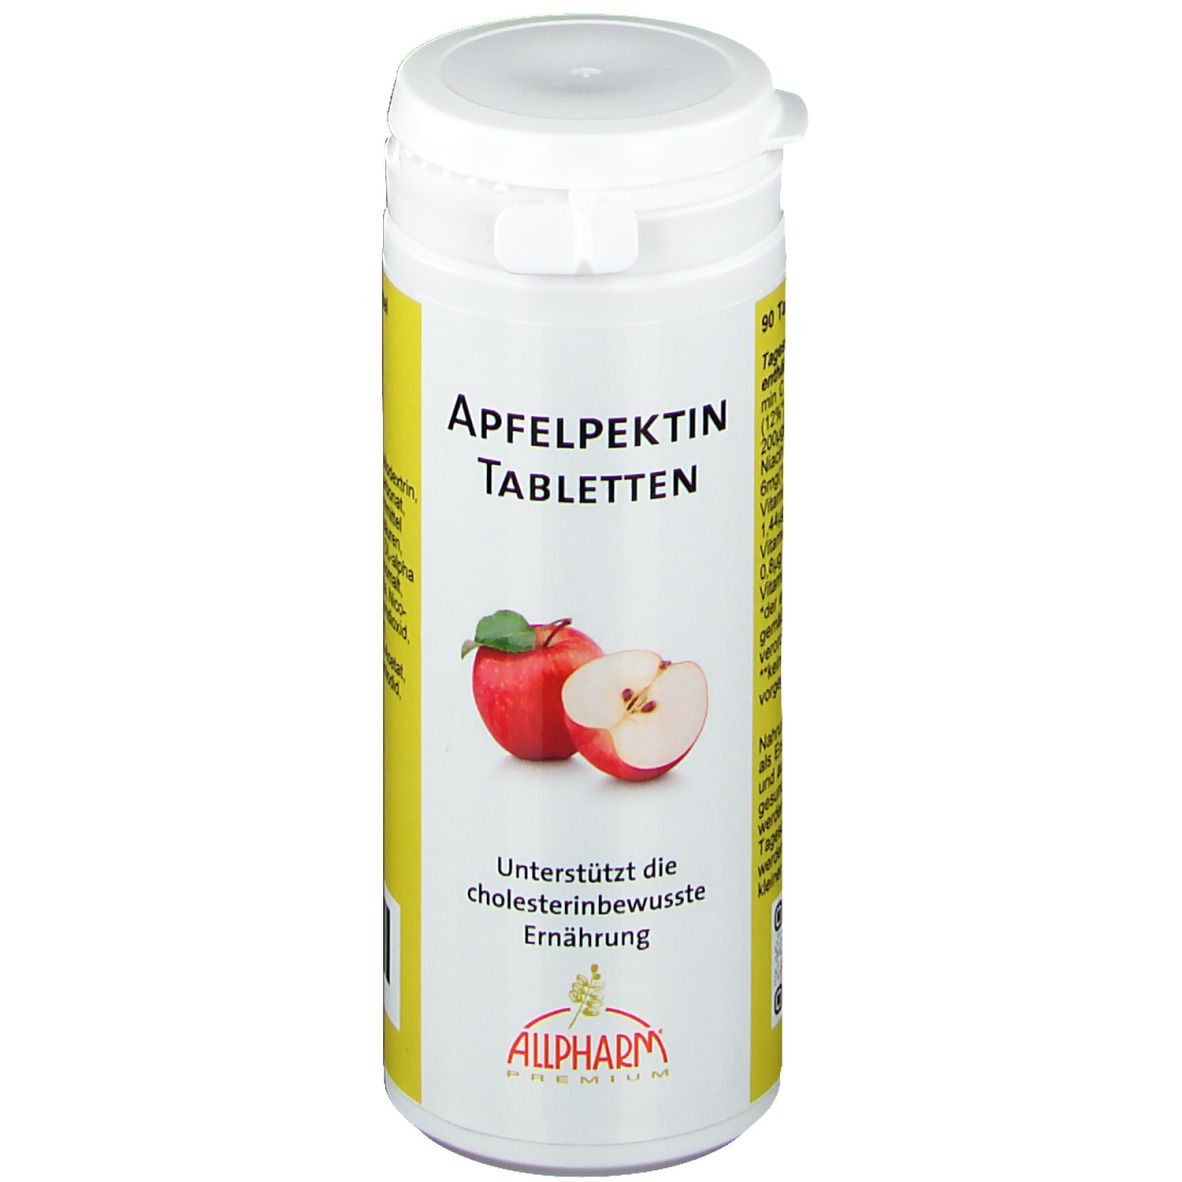 Image of Apfelpektin Tabletten